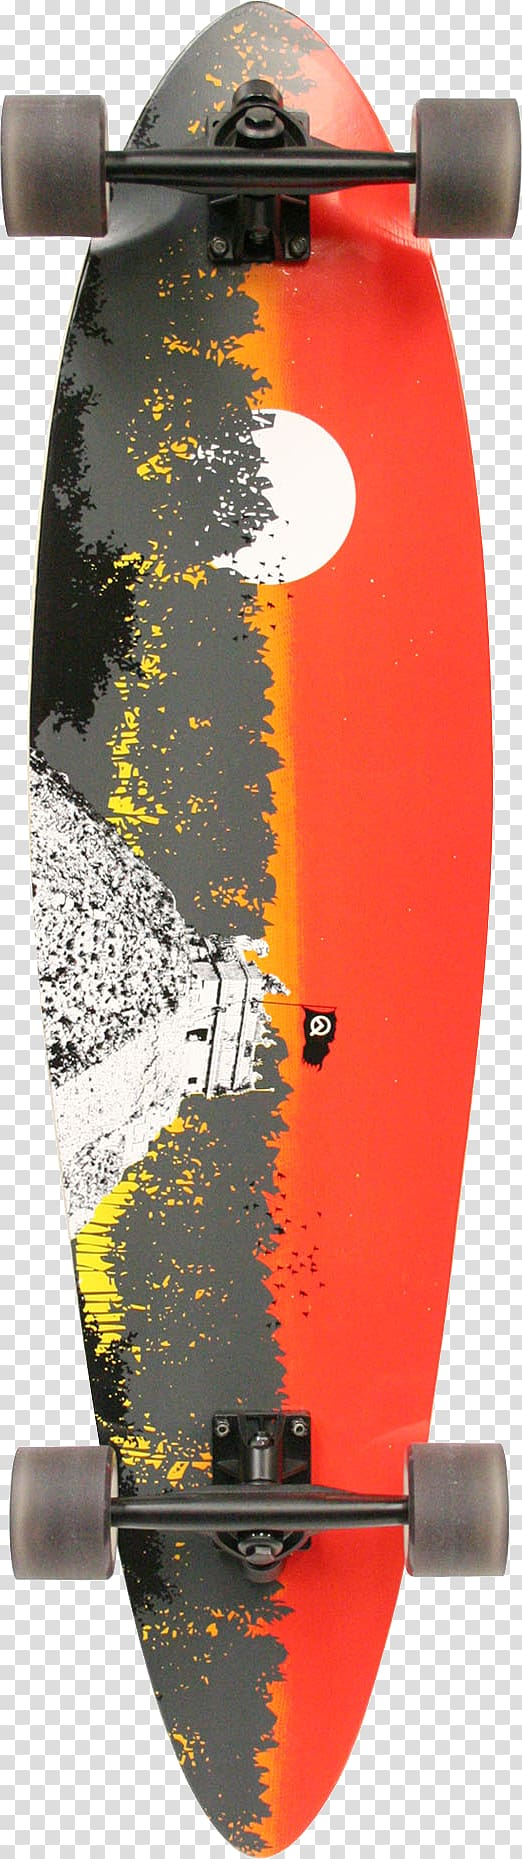 Longboarding Skateboarding Sector 9, skateboard transparent background PNG clipart